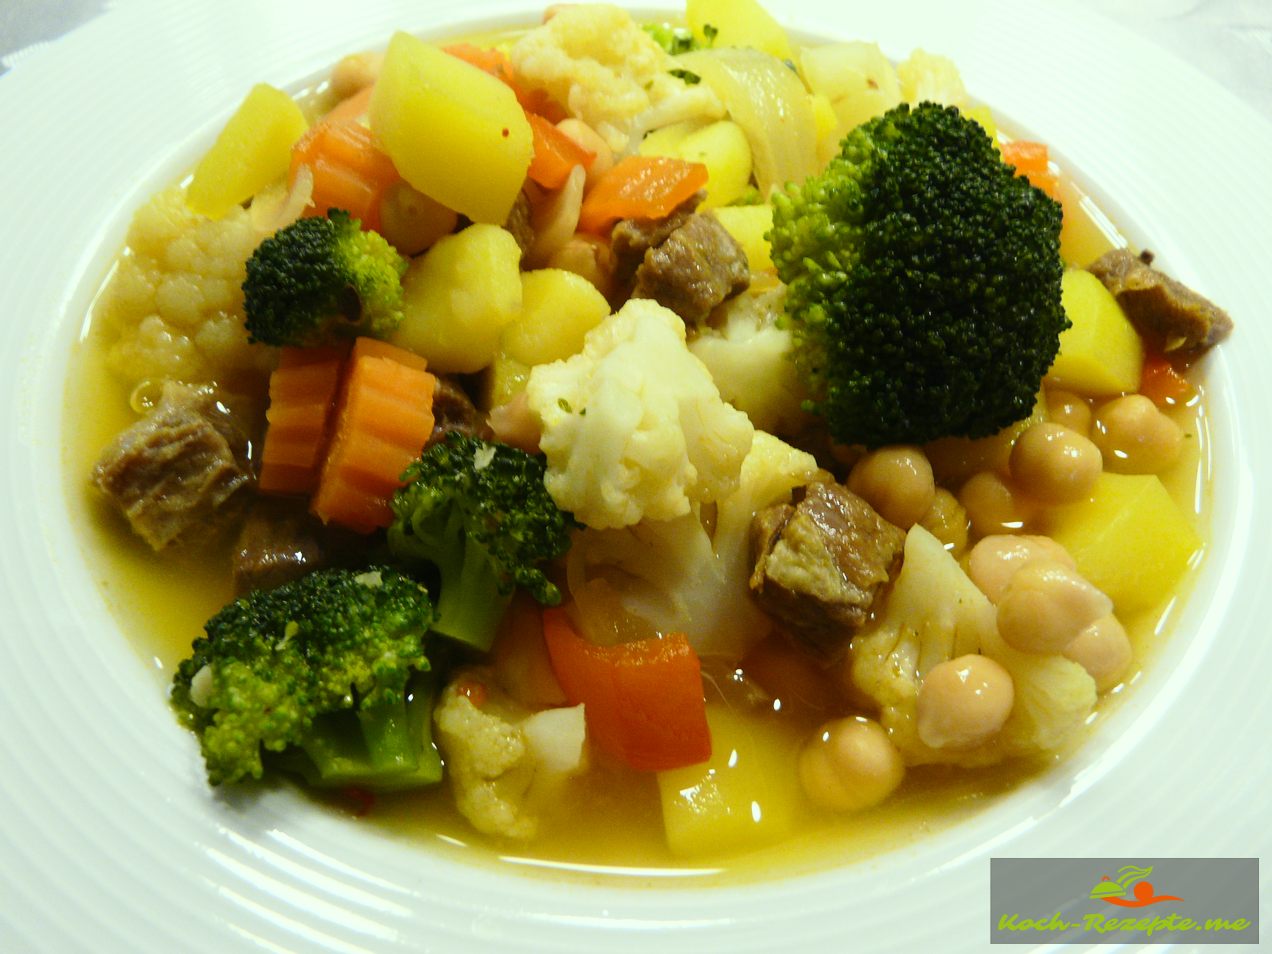 Kichererbsen Eintopf mit Gemüse und Rindfleisch gekocht, ein Klassiker